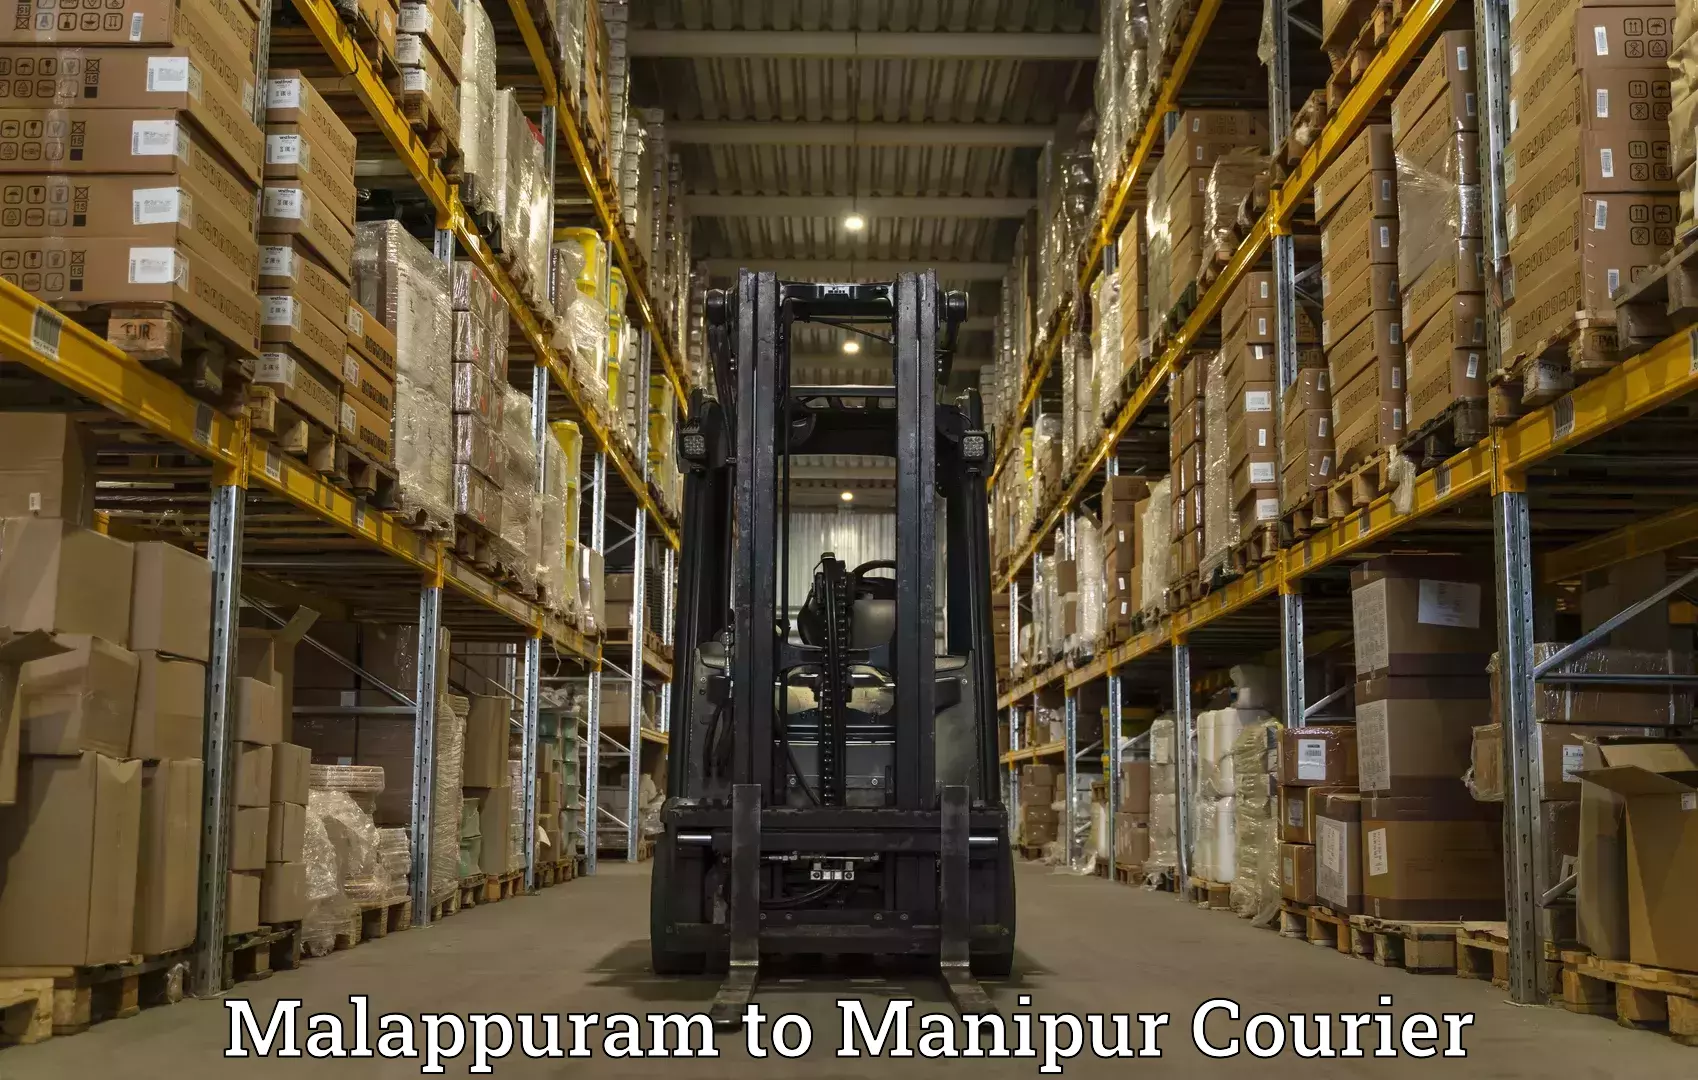 Ocean freight courier Malappuram to Churachandpur